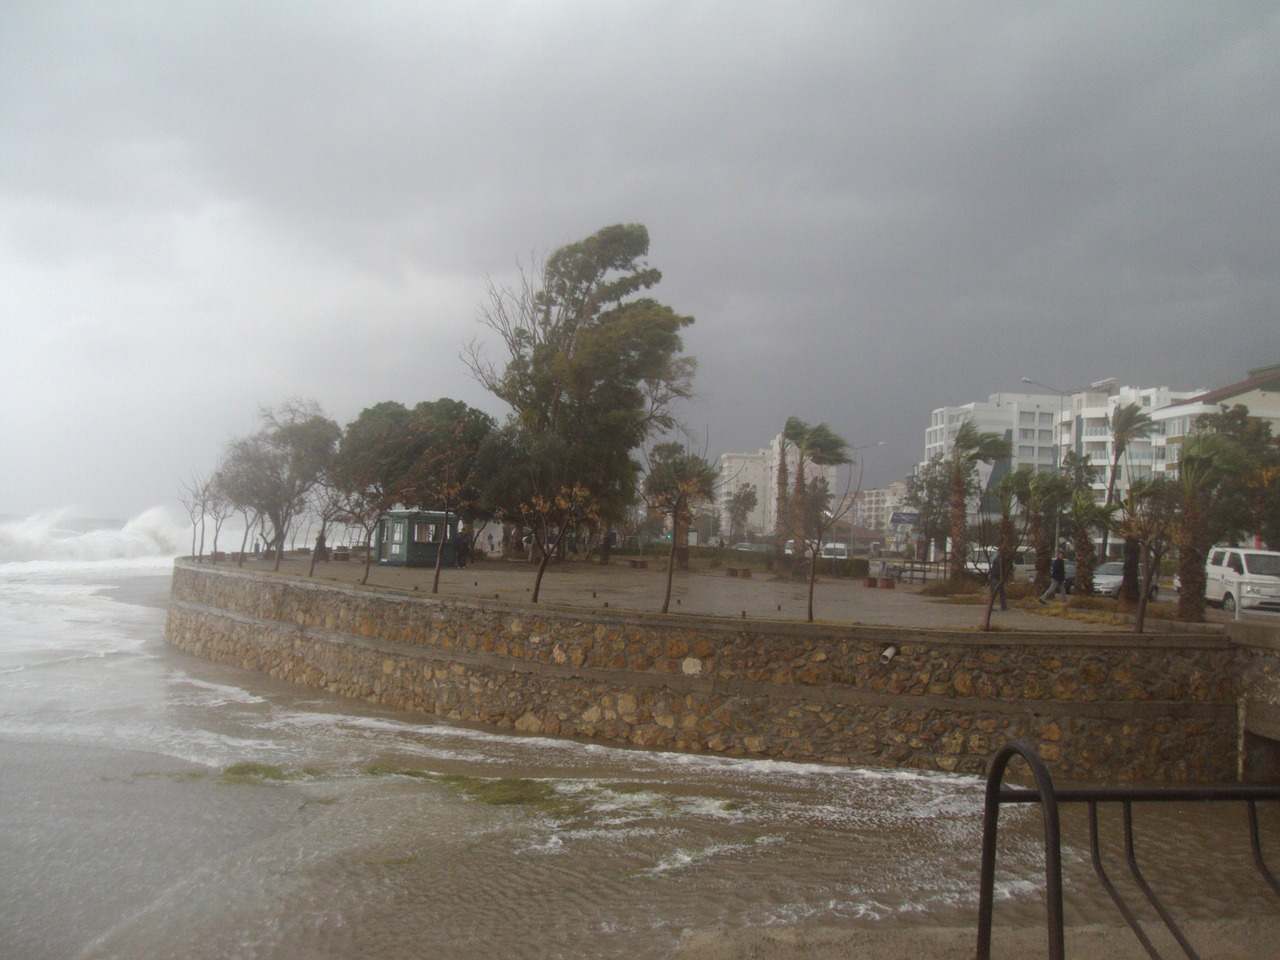 Всім залишатися в готелях: туристи в Анталії отримали попередження про майбутню повінь і торнадо